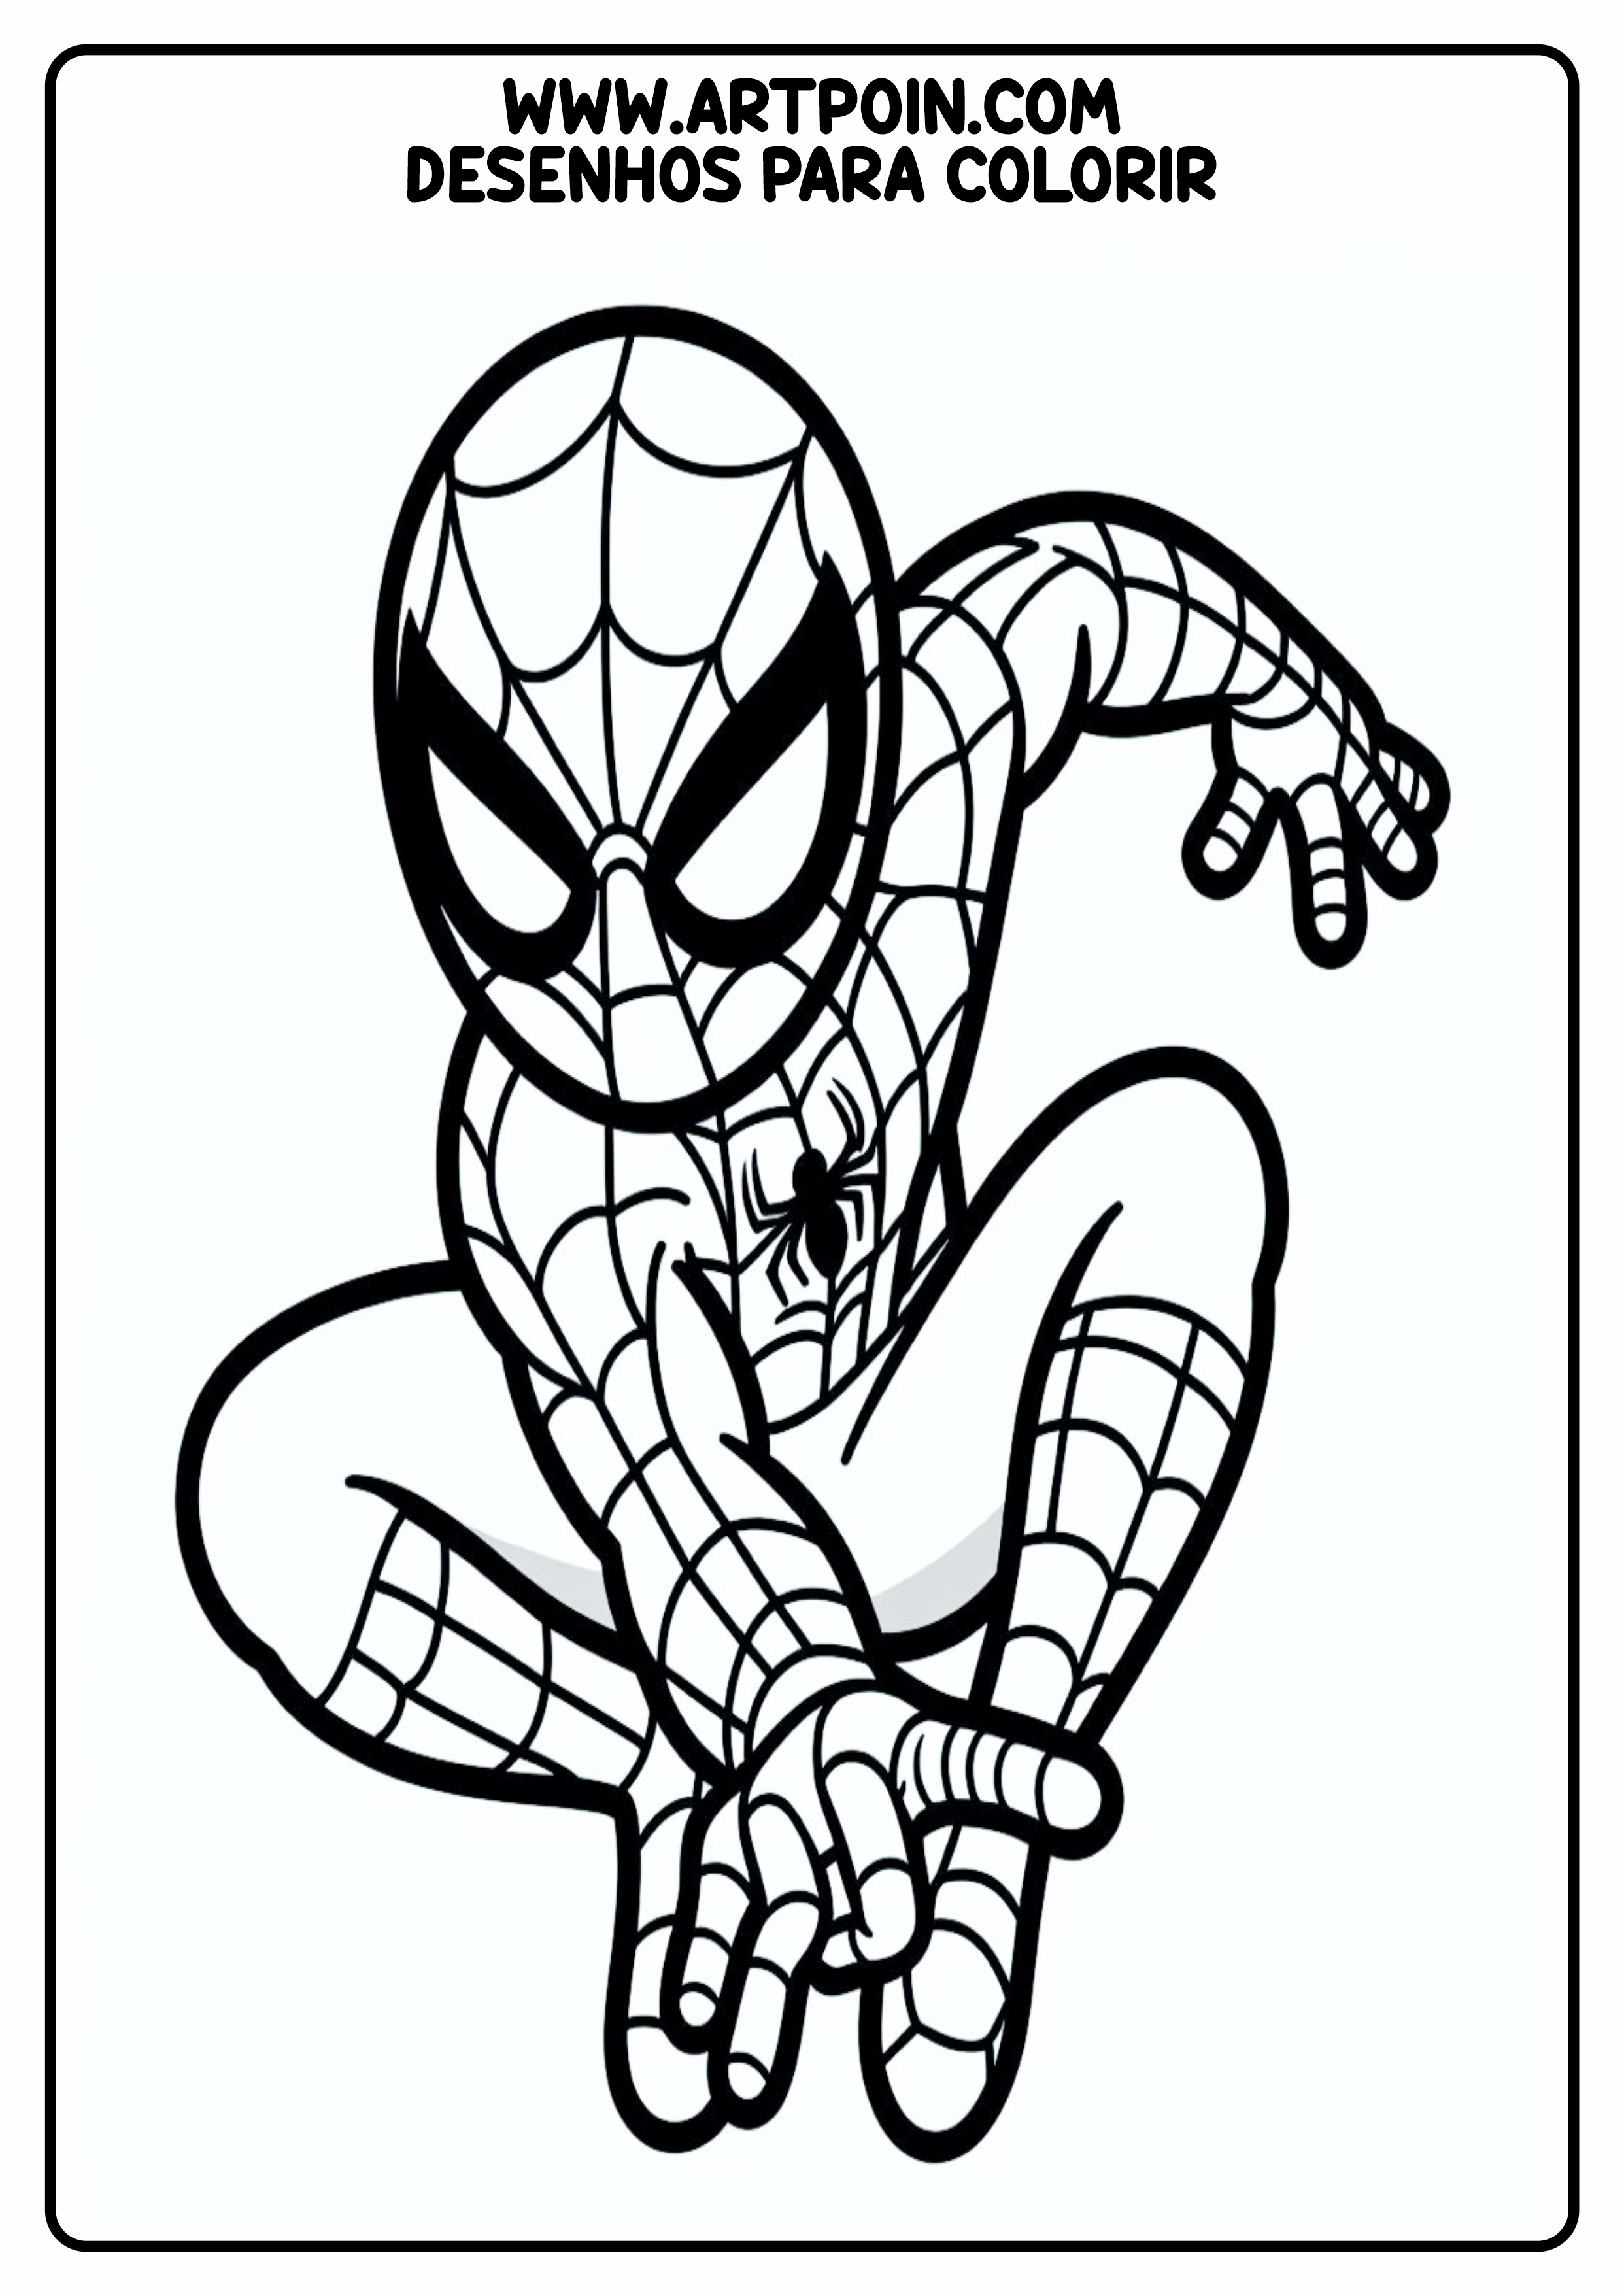 Homem-Aranha spider-man desenho para colorir artes visuais para imprimir atividades para crianças png